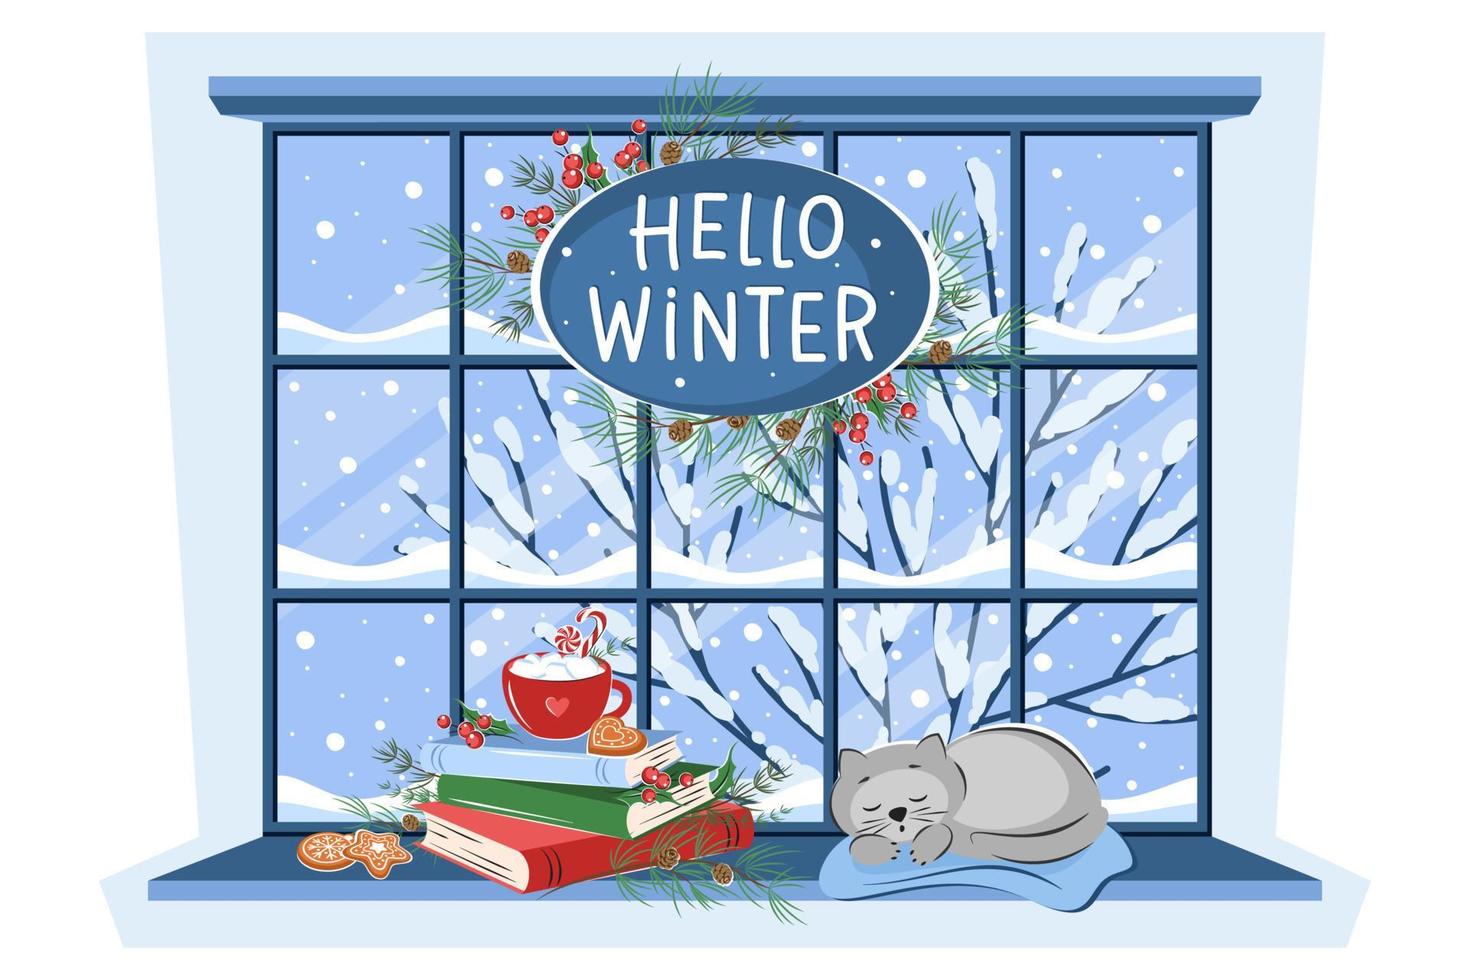 janela de inverno com paisagem, gato dormindo, livros e bebida com biscoitos no peitoril. letras Olá inverno. ilustração vetorial aconchegante vetor